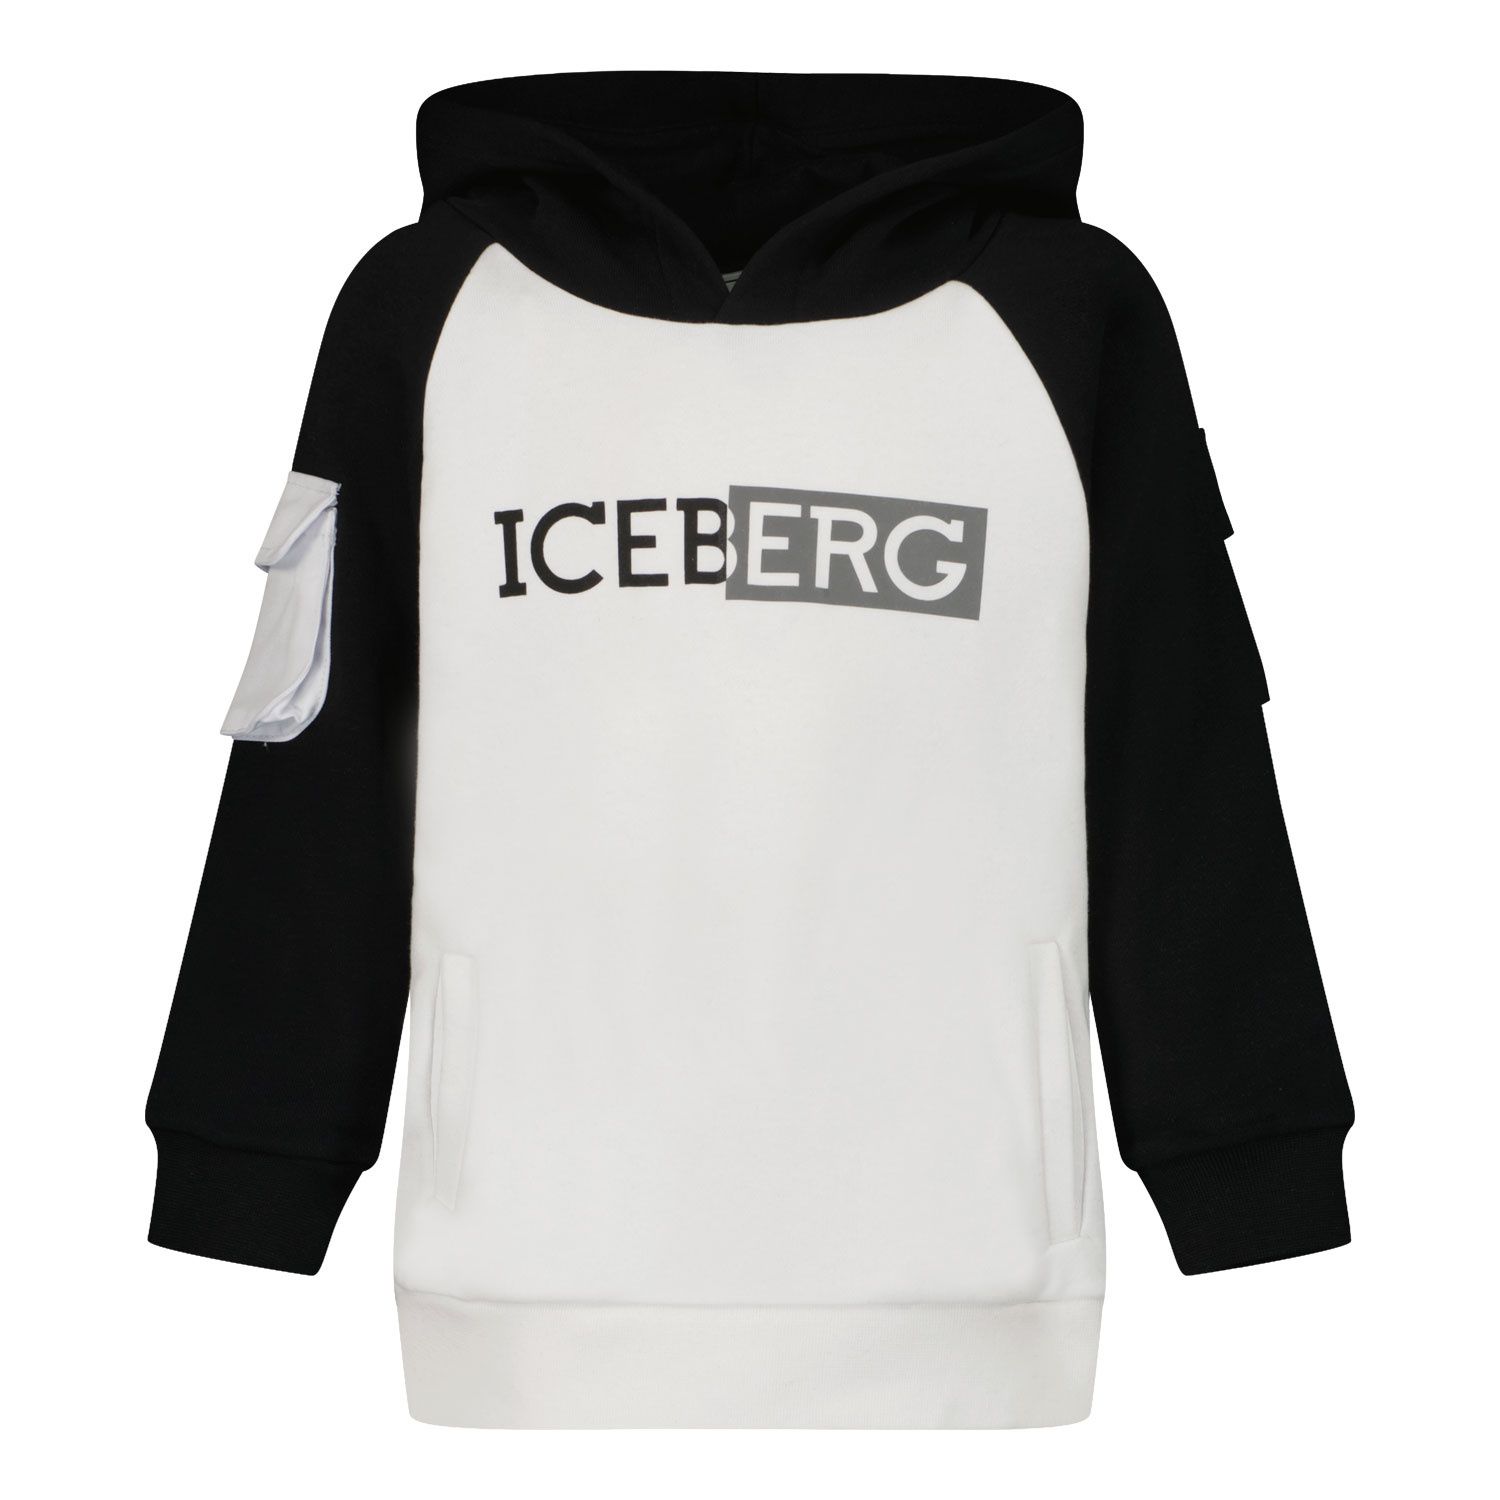 Afbeelding van Iceberg MFICE0133B kindertrui wit